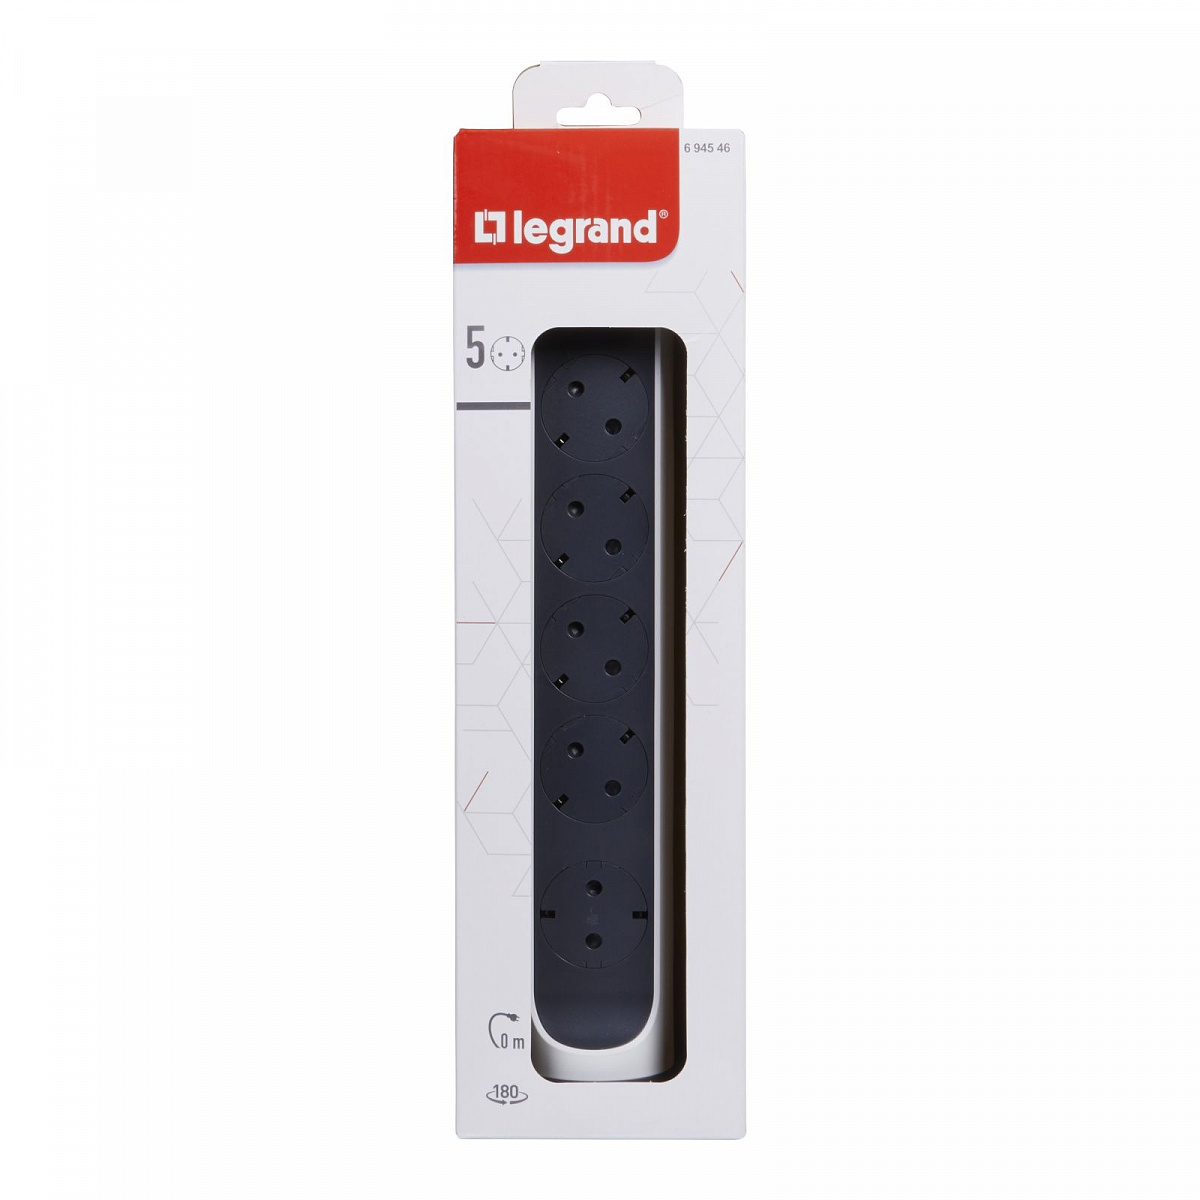 Удлинитель с заземлением  Legrand 5 розеток без кабеля, с кнопкой включения и поворотным основанием, цвет: бело-черный